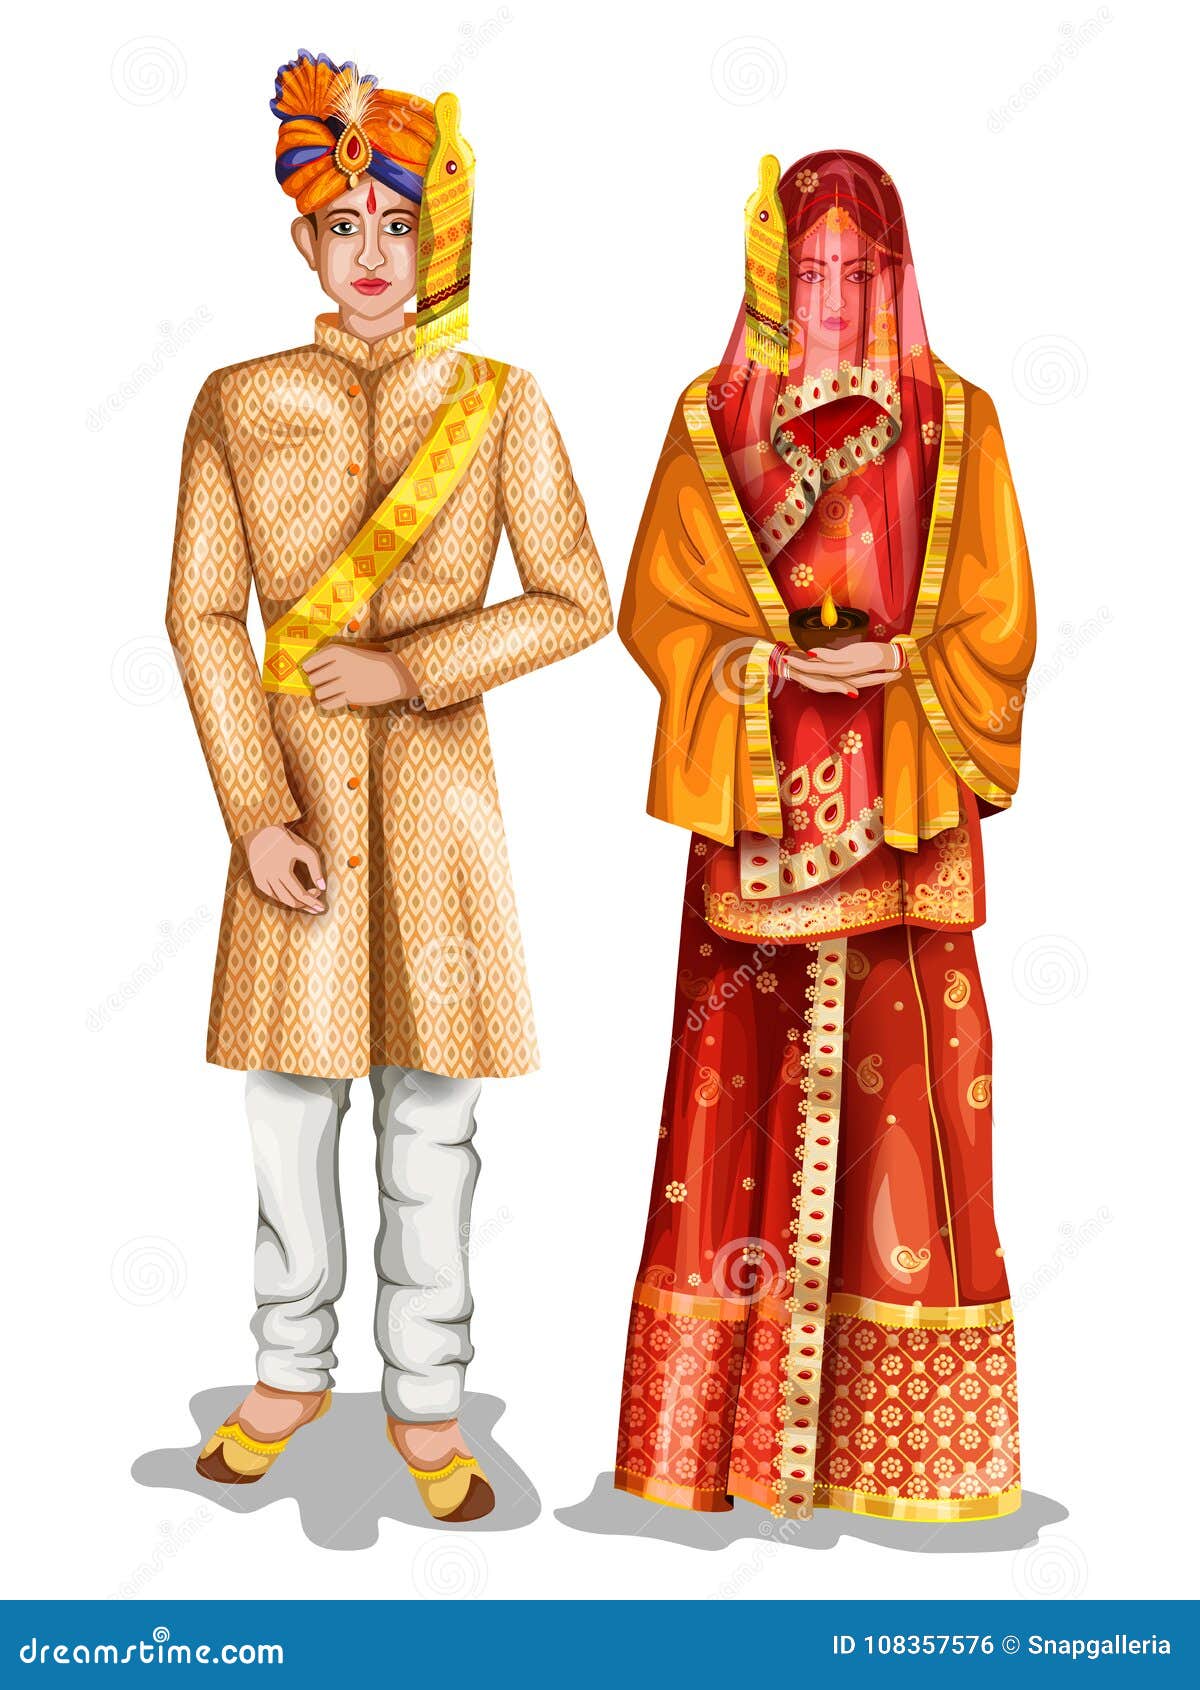 Easy Edit Vector Illustration Uttarpradeshi Wedding Stock Vector (Royalty  Free) 1008635926 | Shutterstock